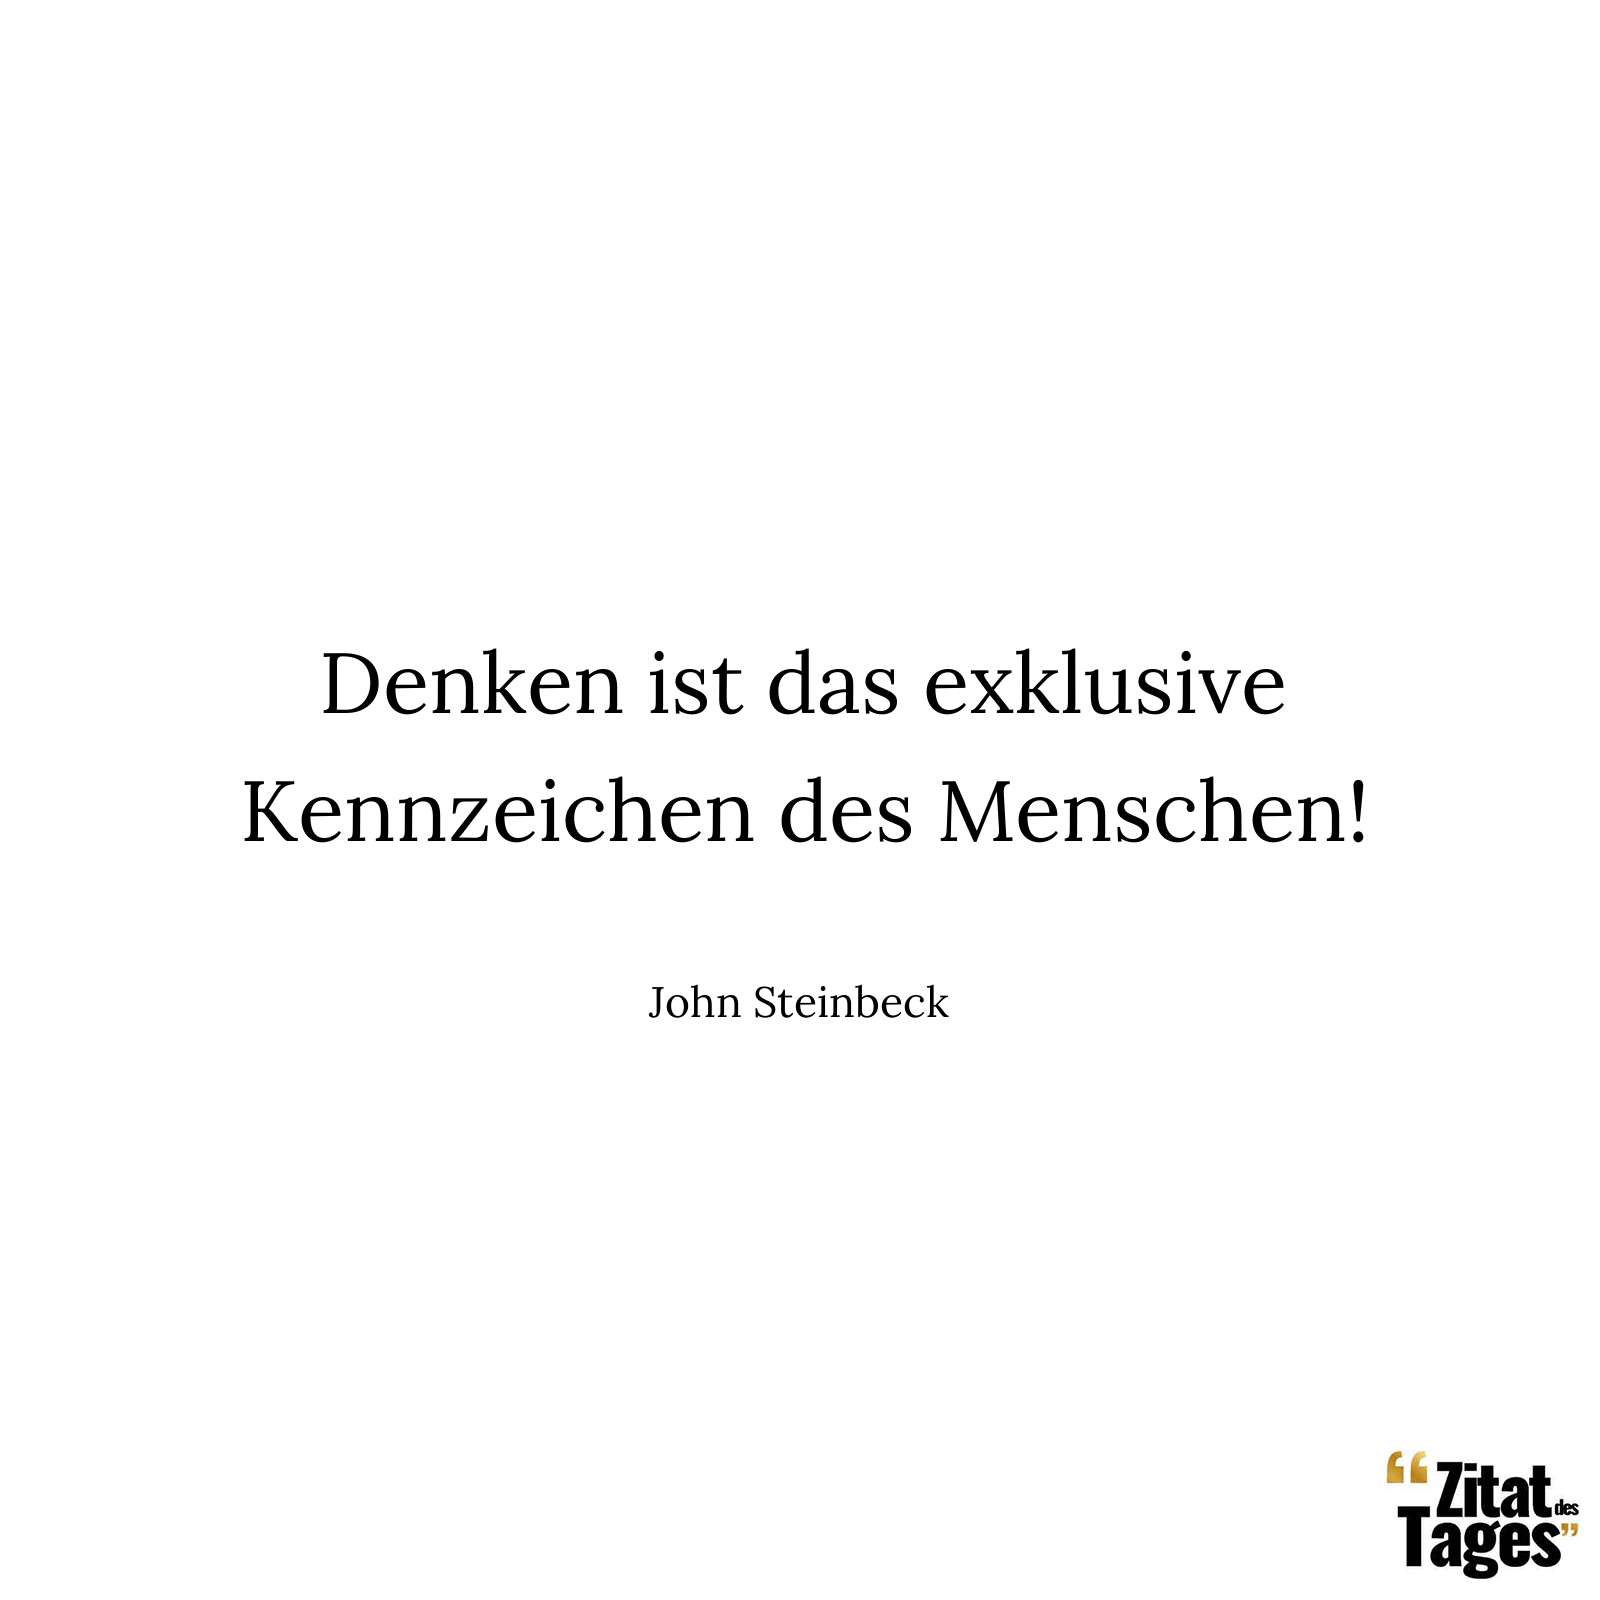 Denken ist das exklusive Kennzeichen des Menschen! - John Steinbeck